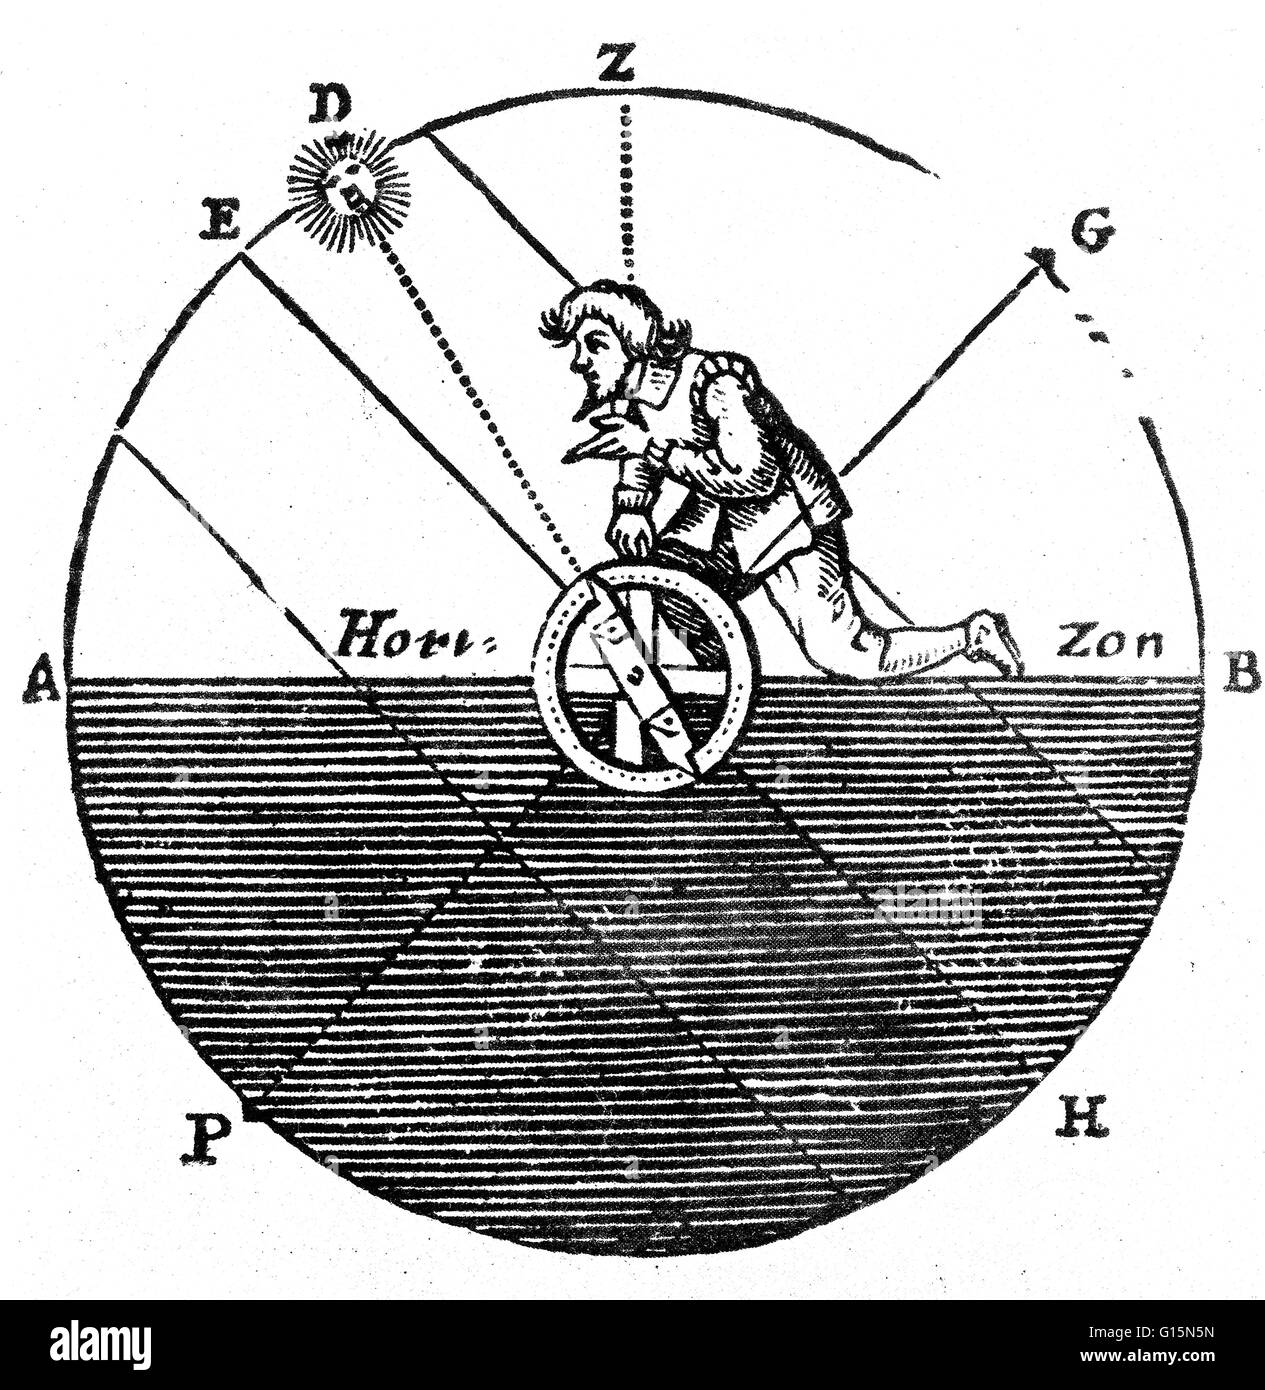 Xvii secolo xilografia dà un grezzo illustrazione di come l'astrolabio è stato usato per misurare il sole la distanza zenitale. La distanza zenitale è l'angolo tra il punto indefinito z e Sun D. astrolabio è un elaborato inclinometro, storicamente usato Foto Stock